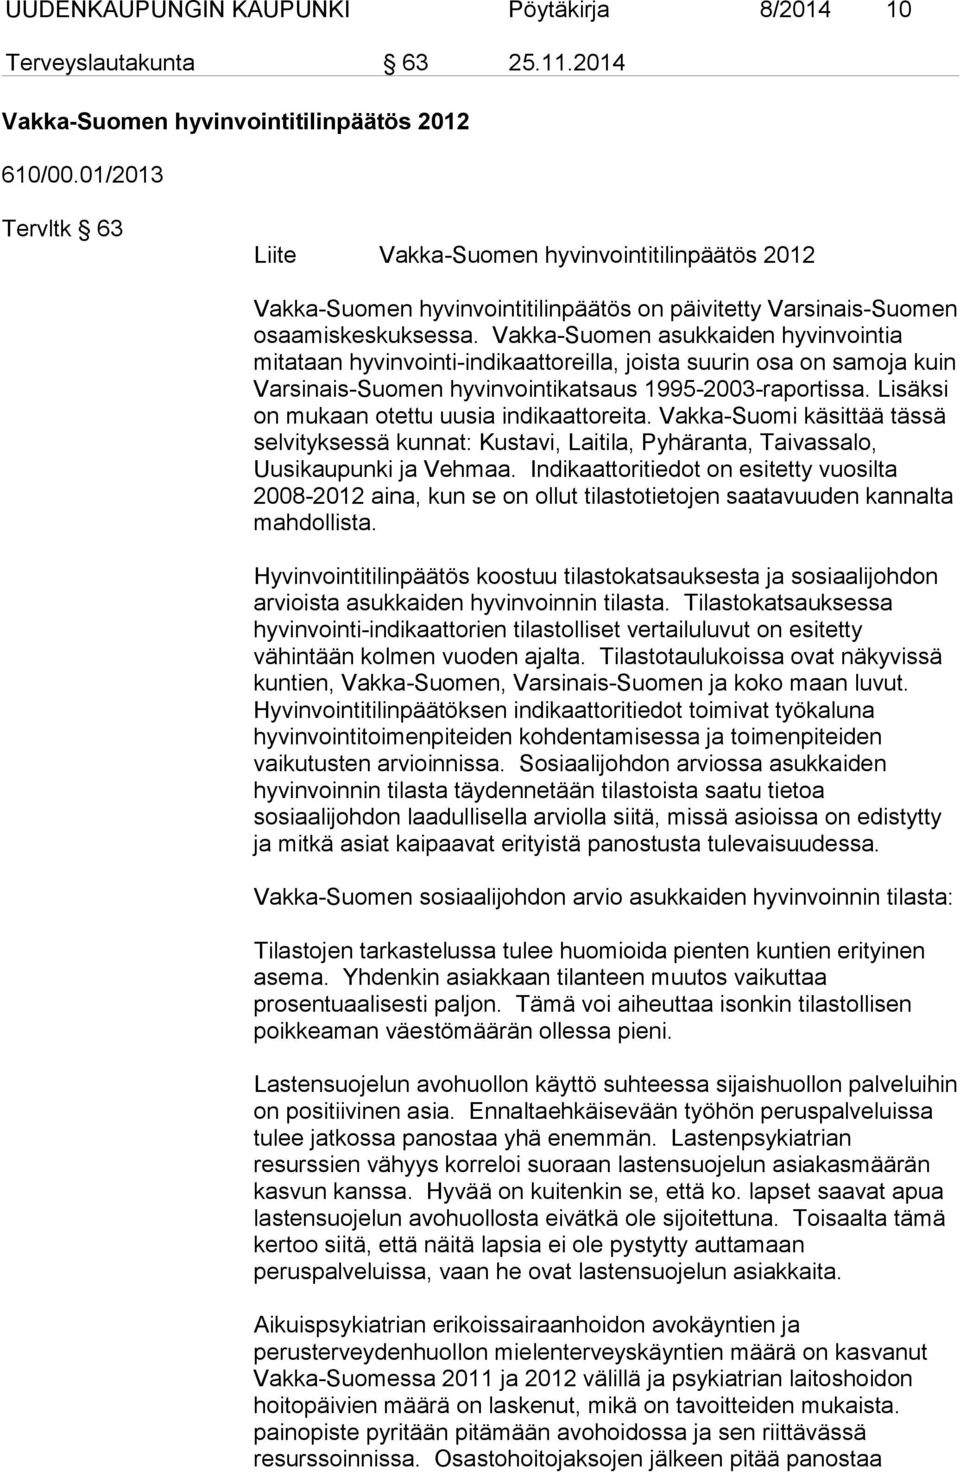 Vakka-Suomen asukkaiden hyvinvointia mitataan hyvinvointi-indikaattoreilla, joista suurin osa on samoja kuin Varsinais-Suomen hyvinvointikatsaus 1995-2003-raportissa.